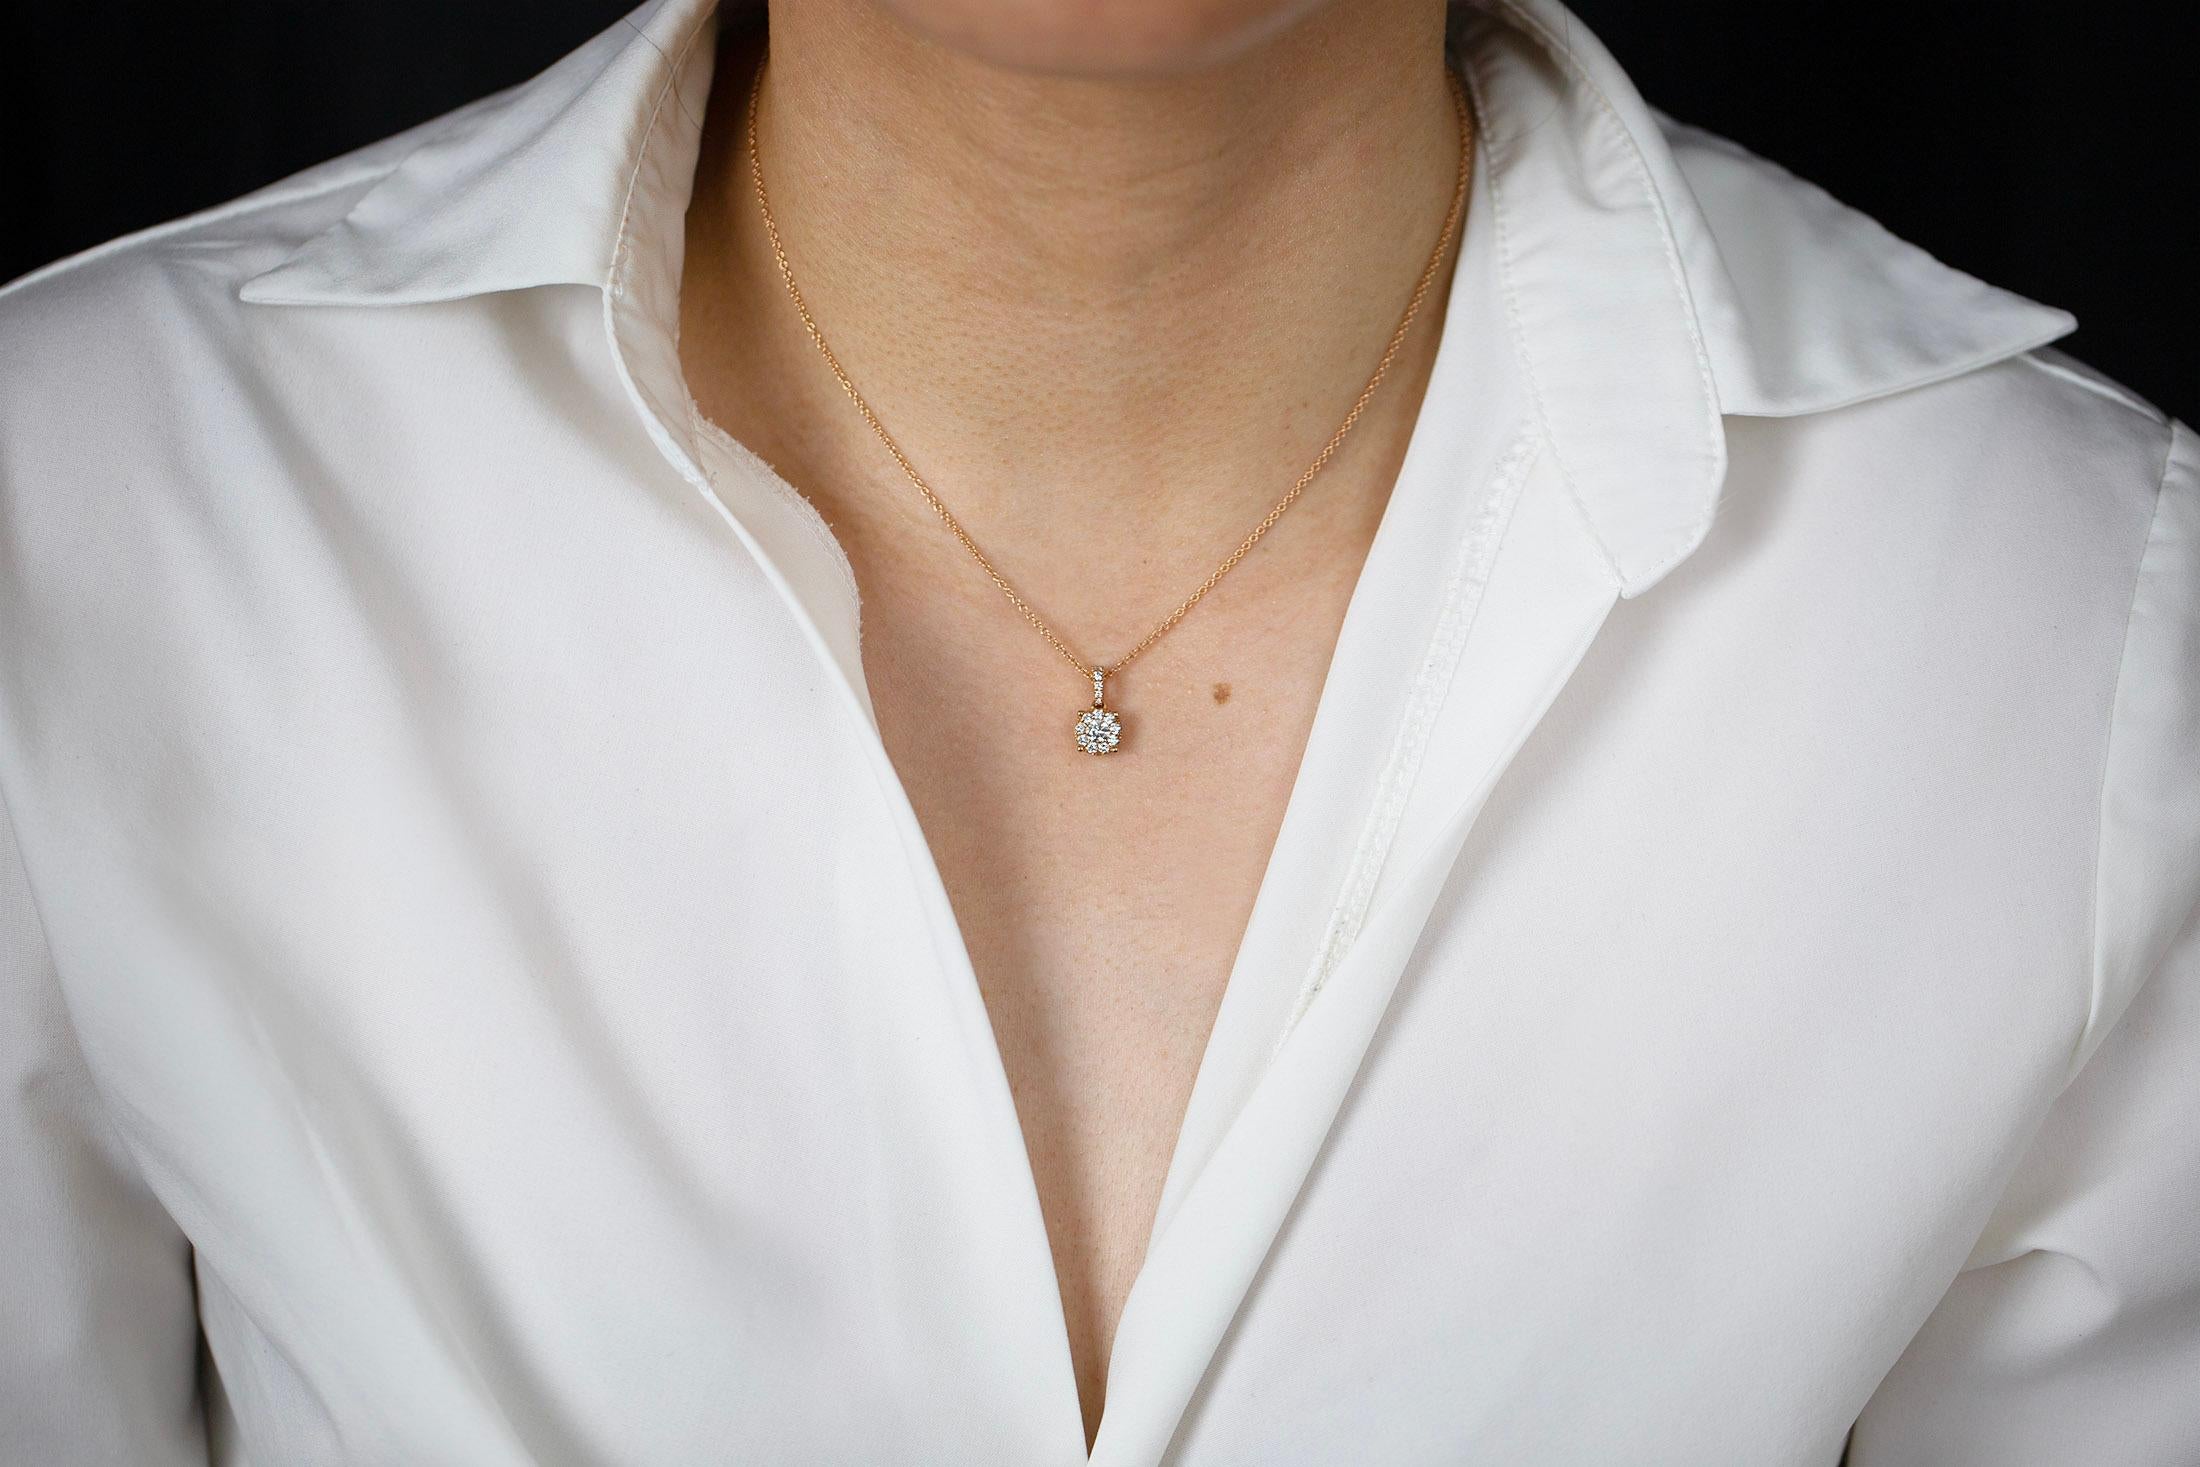 Un collier pendentif simple mais unique mettant en valeur une grappe de diamants ronds de taille brillant pesant 0,48 carats au total. Suspendu à une balle incrustée de diamants et à une chaîne réglable en or rose de 16 pouces. Finement réalisé en